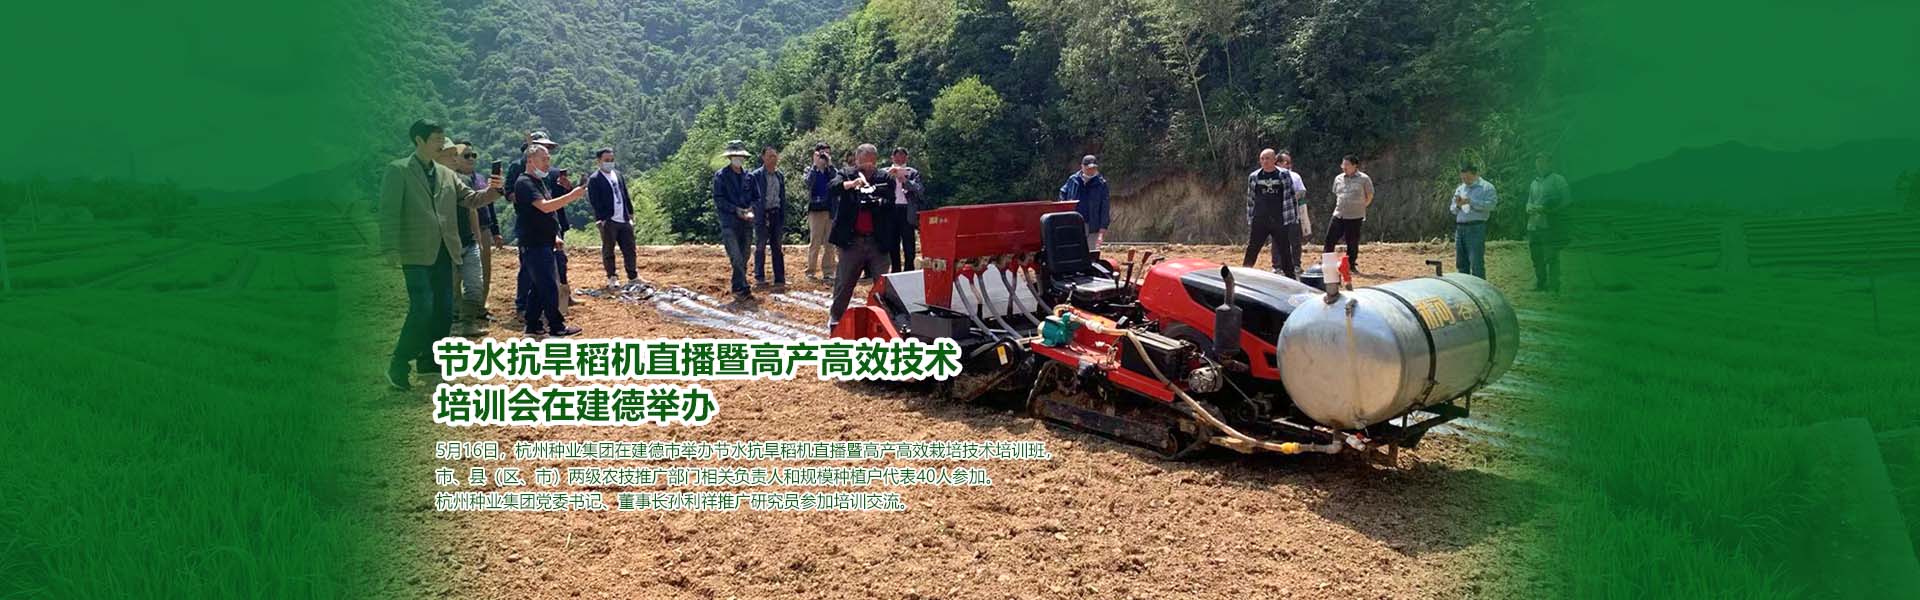 节水抗旱稻机直播暨高产高效技术 培训会在建德举办